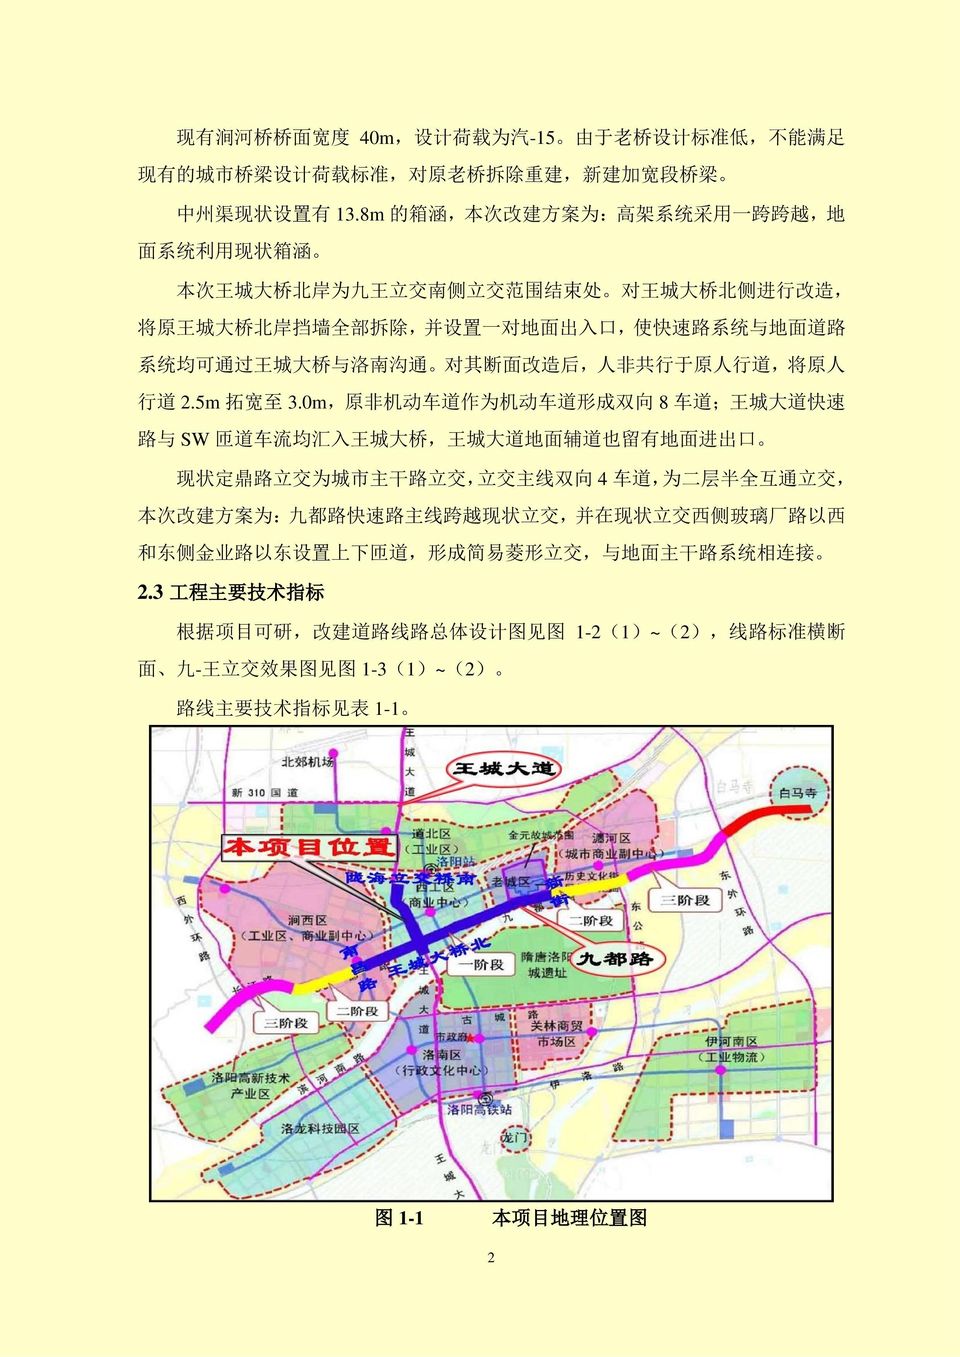 面 道 路 系 统 均 可 通 过 王 城 大 桥 与 洛 南 沟 通 对 其 断 面 改 造 后, 人 非 共 行 于 原 人 行 道, 将 原 人 行 道 2.5m 拓 宽 至 3.